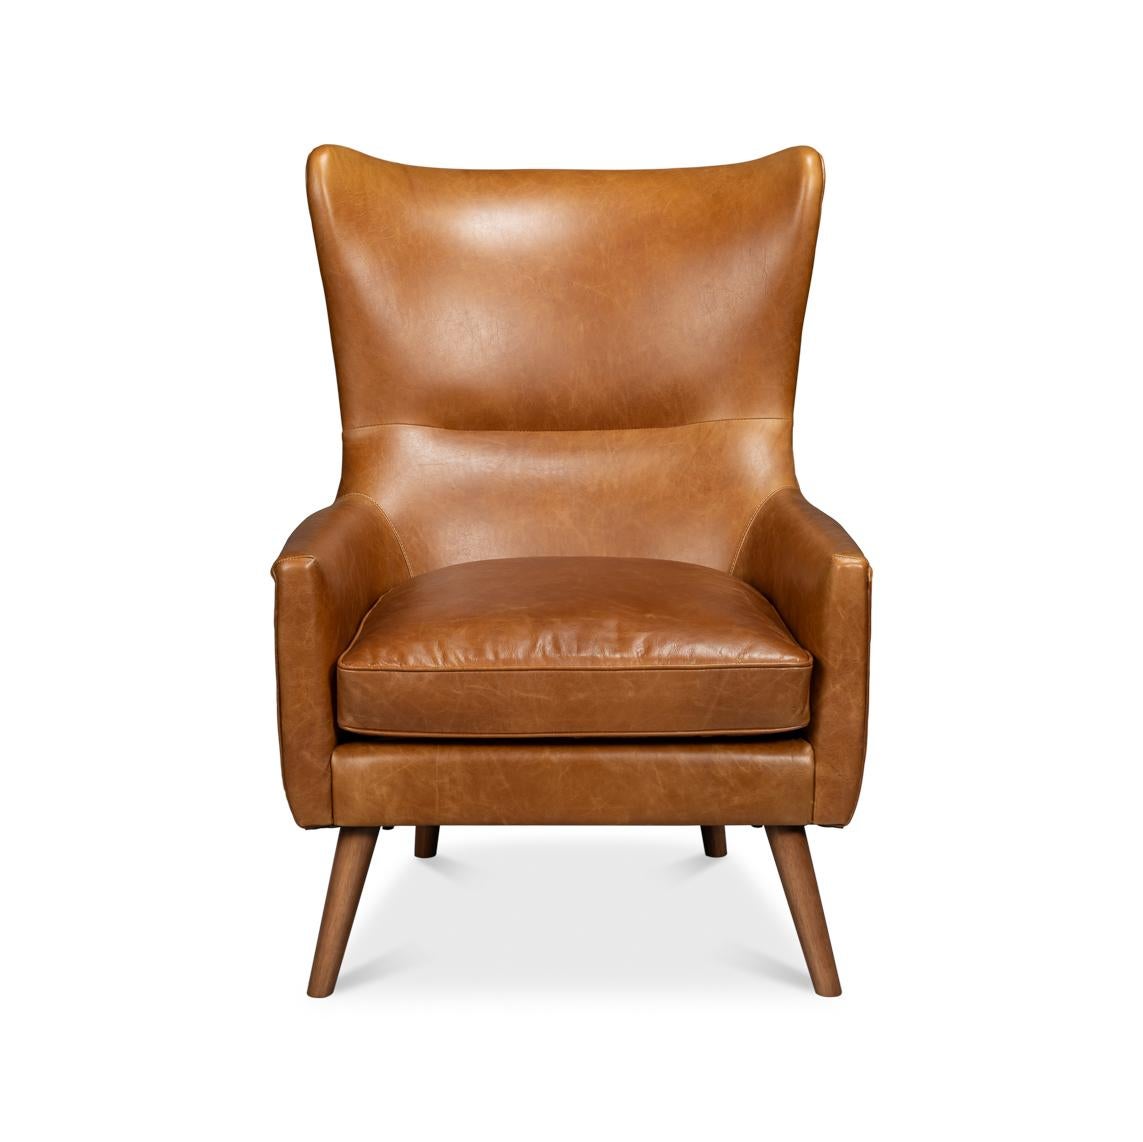 Eine nahtlose Verbindung von klassischem Design und modernem Komfort. Dieser Sessel ist aus kostbarem, karamellfarbenem Cuba Brown-Leder gefertigt und strahlt eine reiche, einladende Atmosphäre aus, die zum Sitzen und Verweilen einlädt.

Die